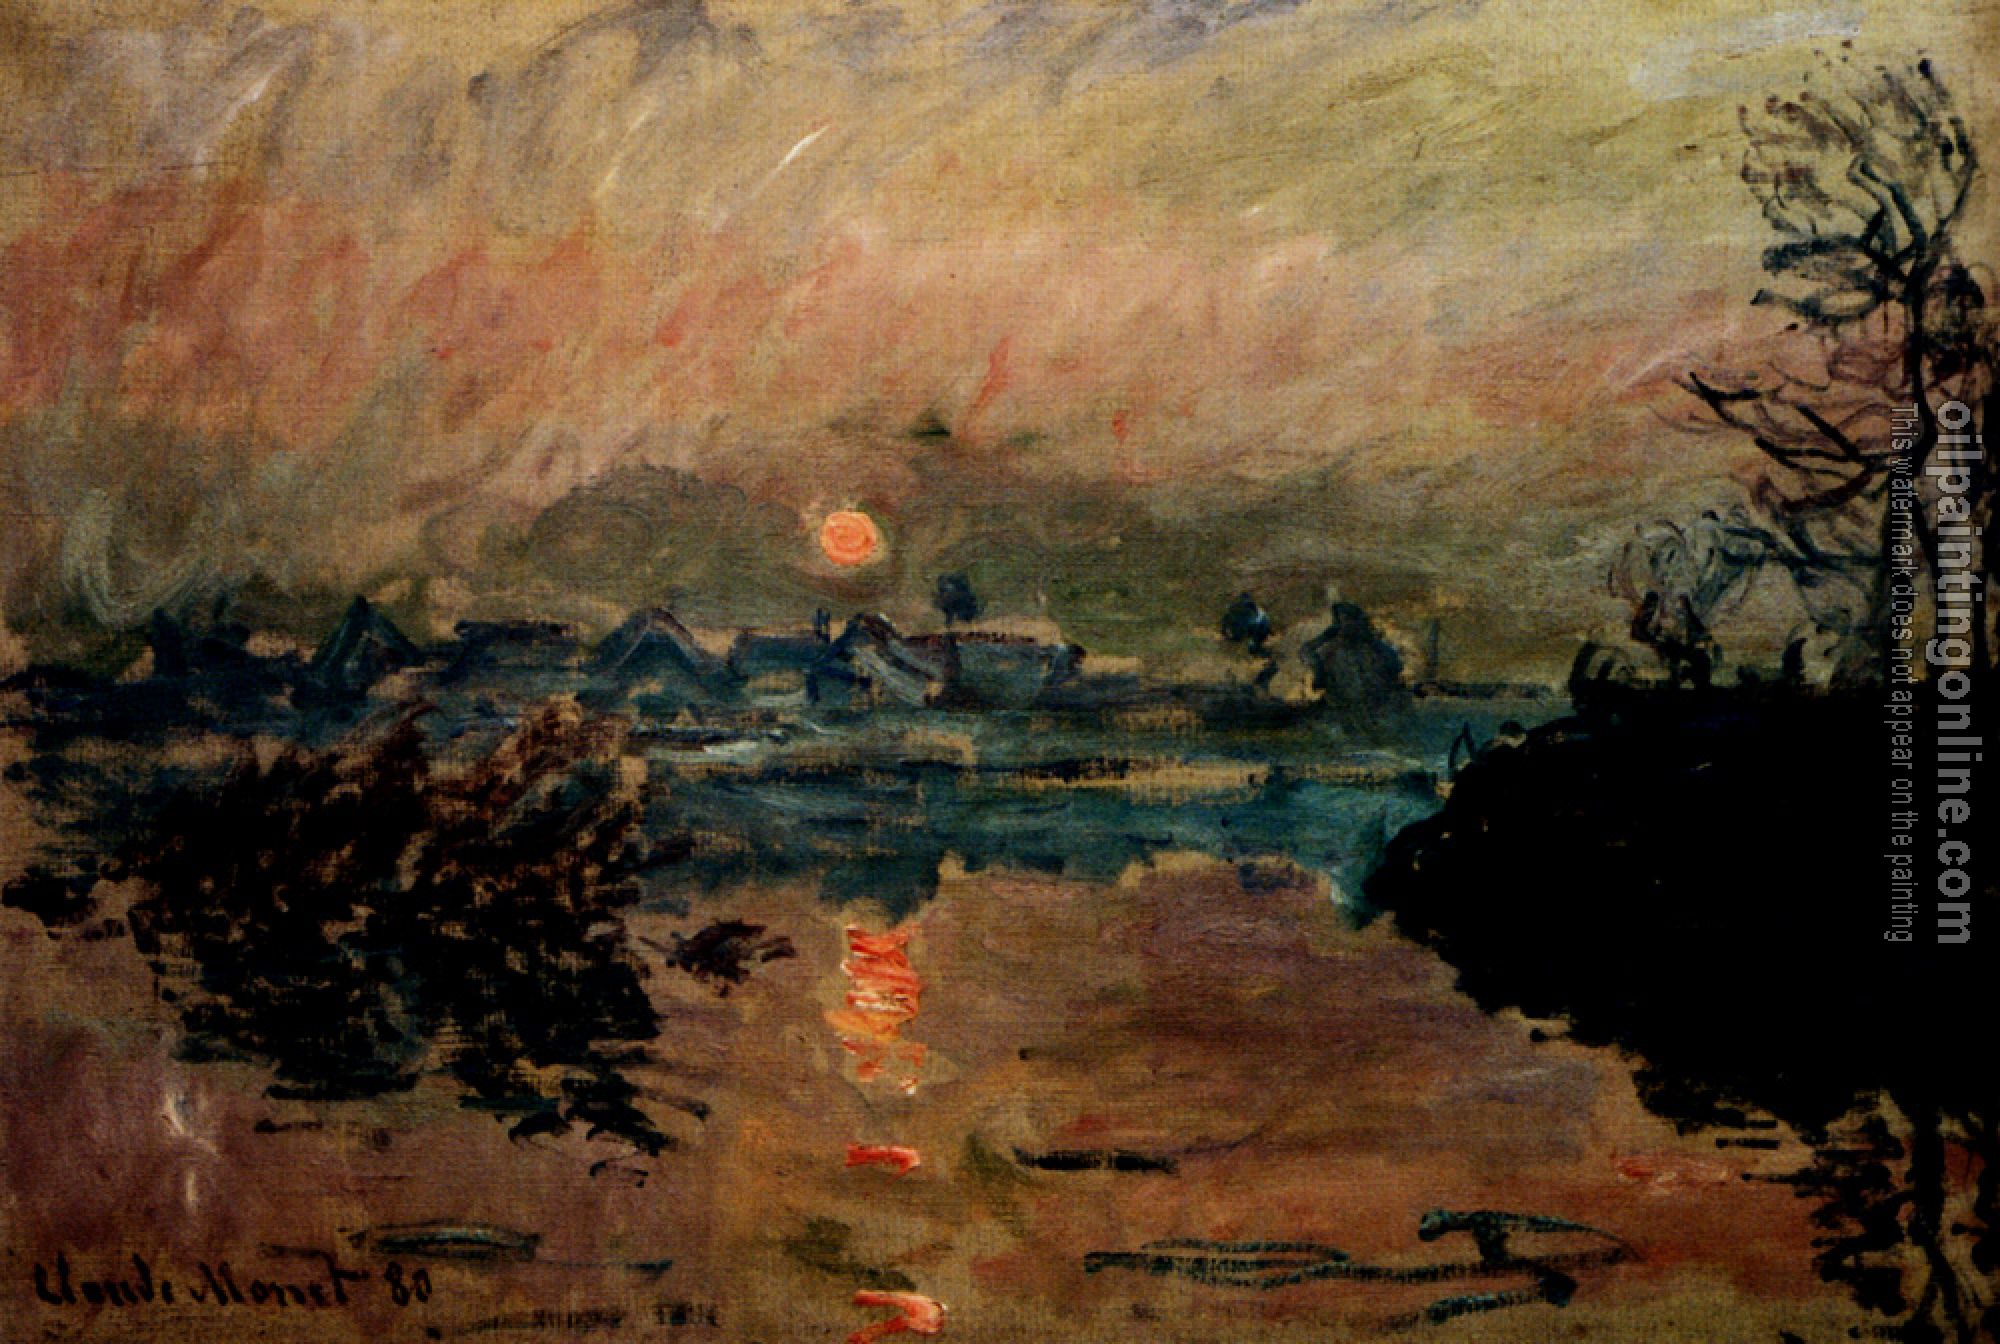 Monet, Claude Oscar - Sunset